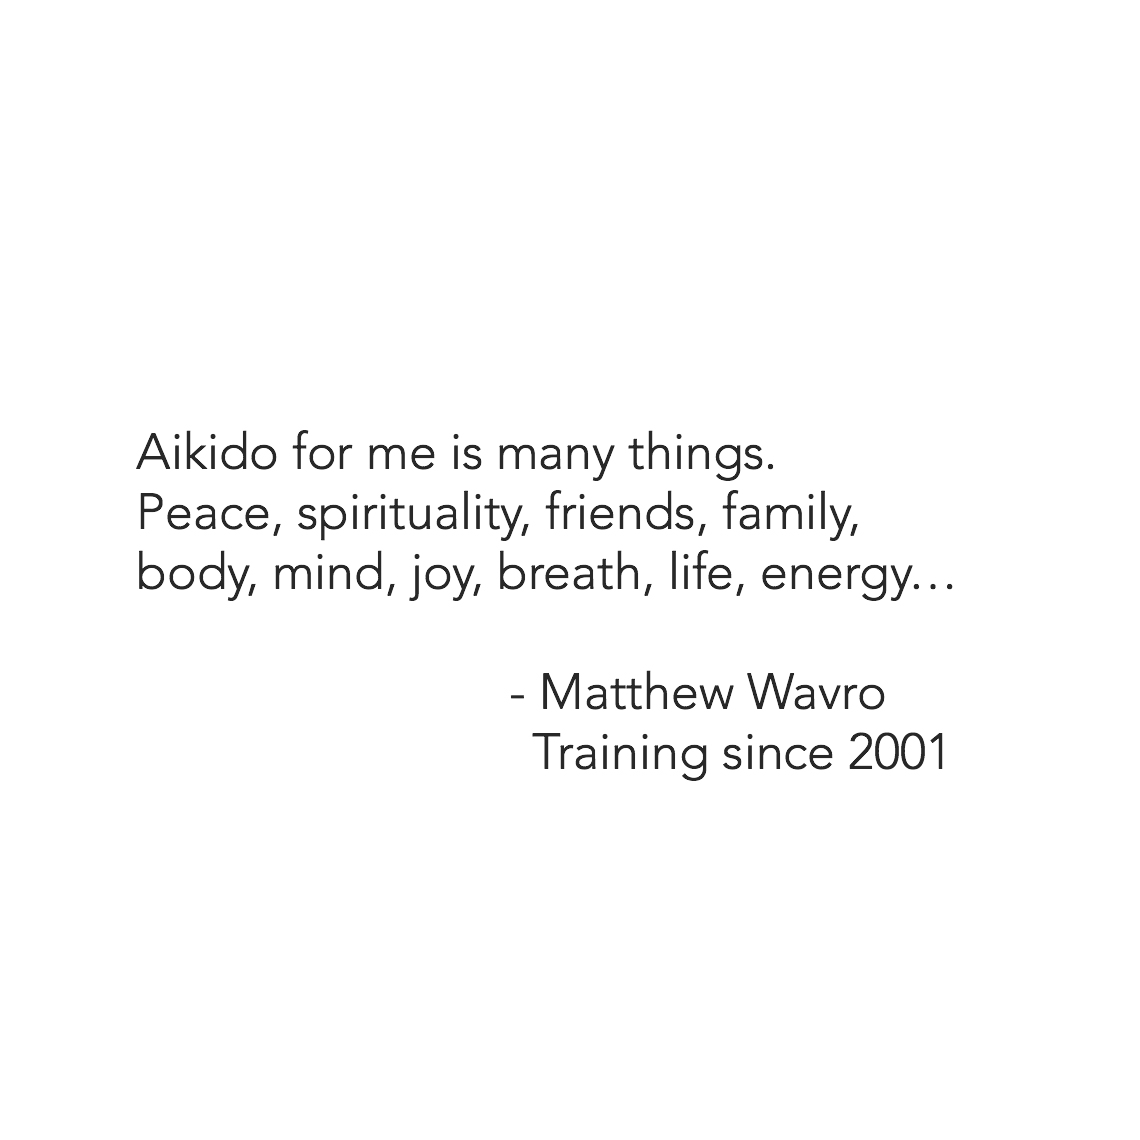 Matthew wavro 2001